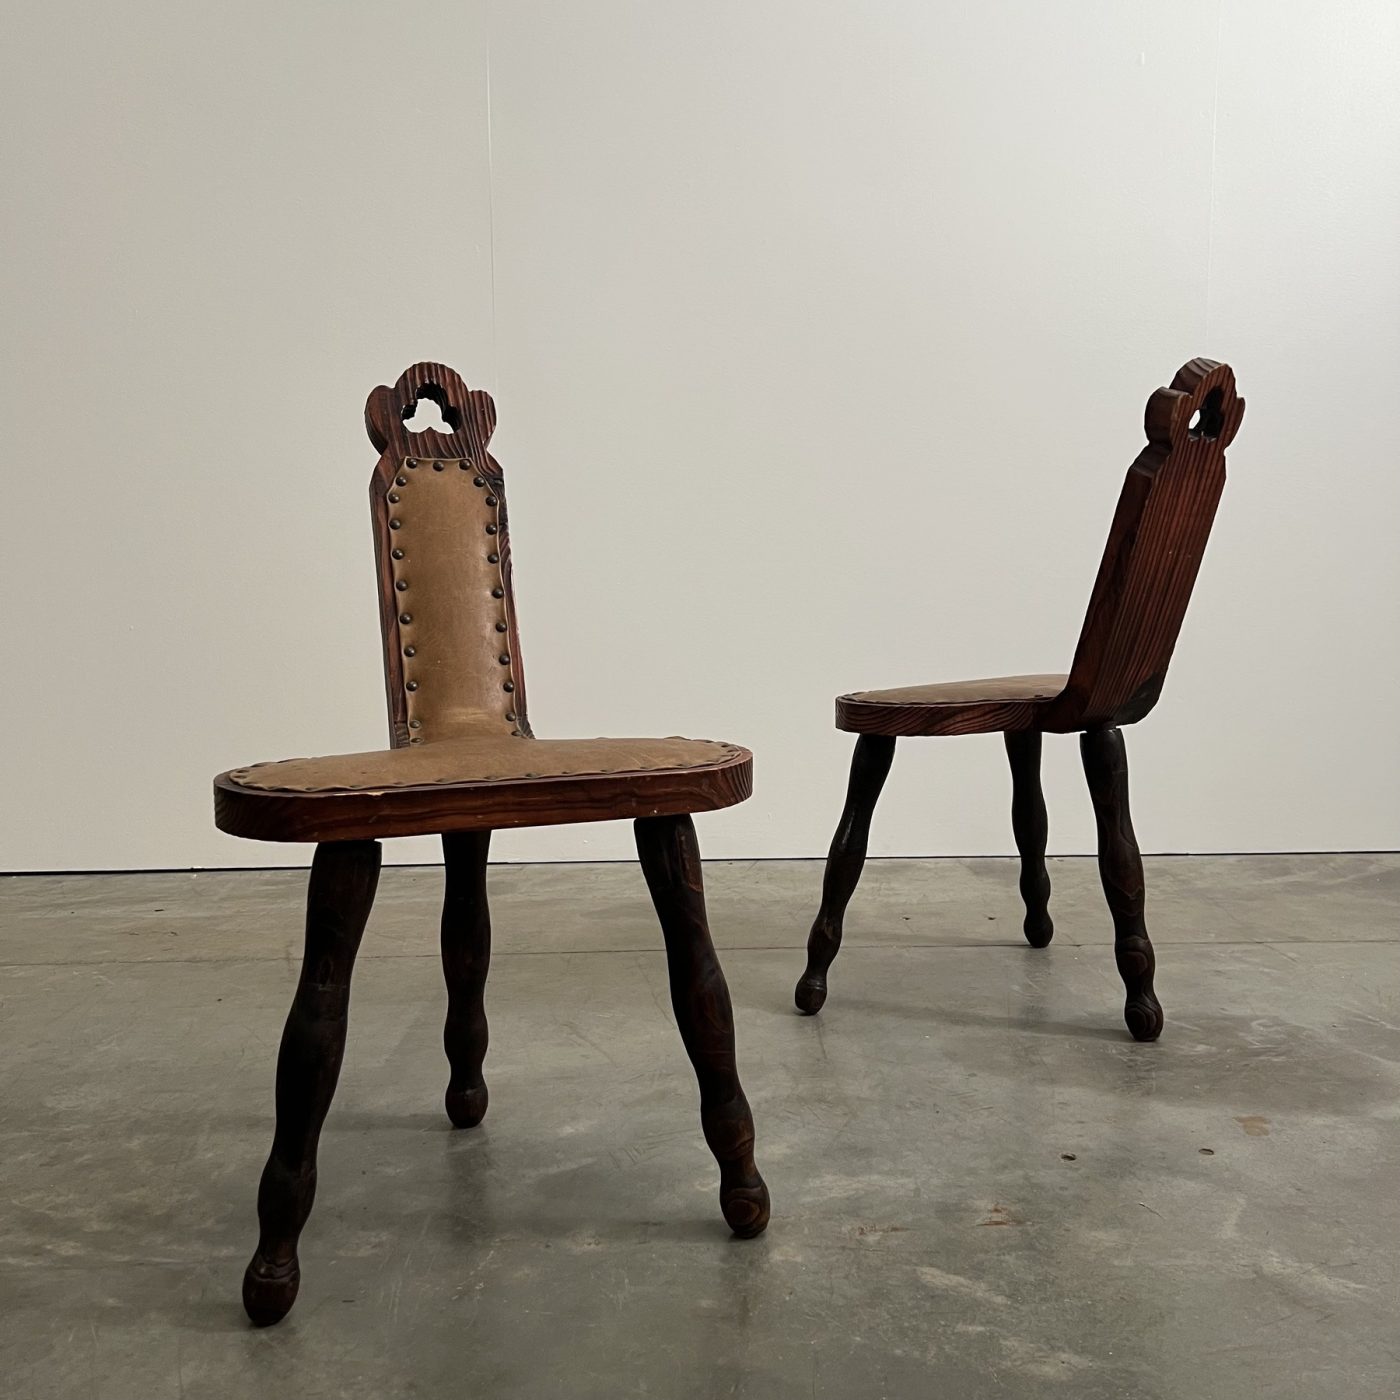 objet-vagabond-primitive-chairs0000